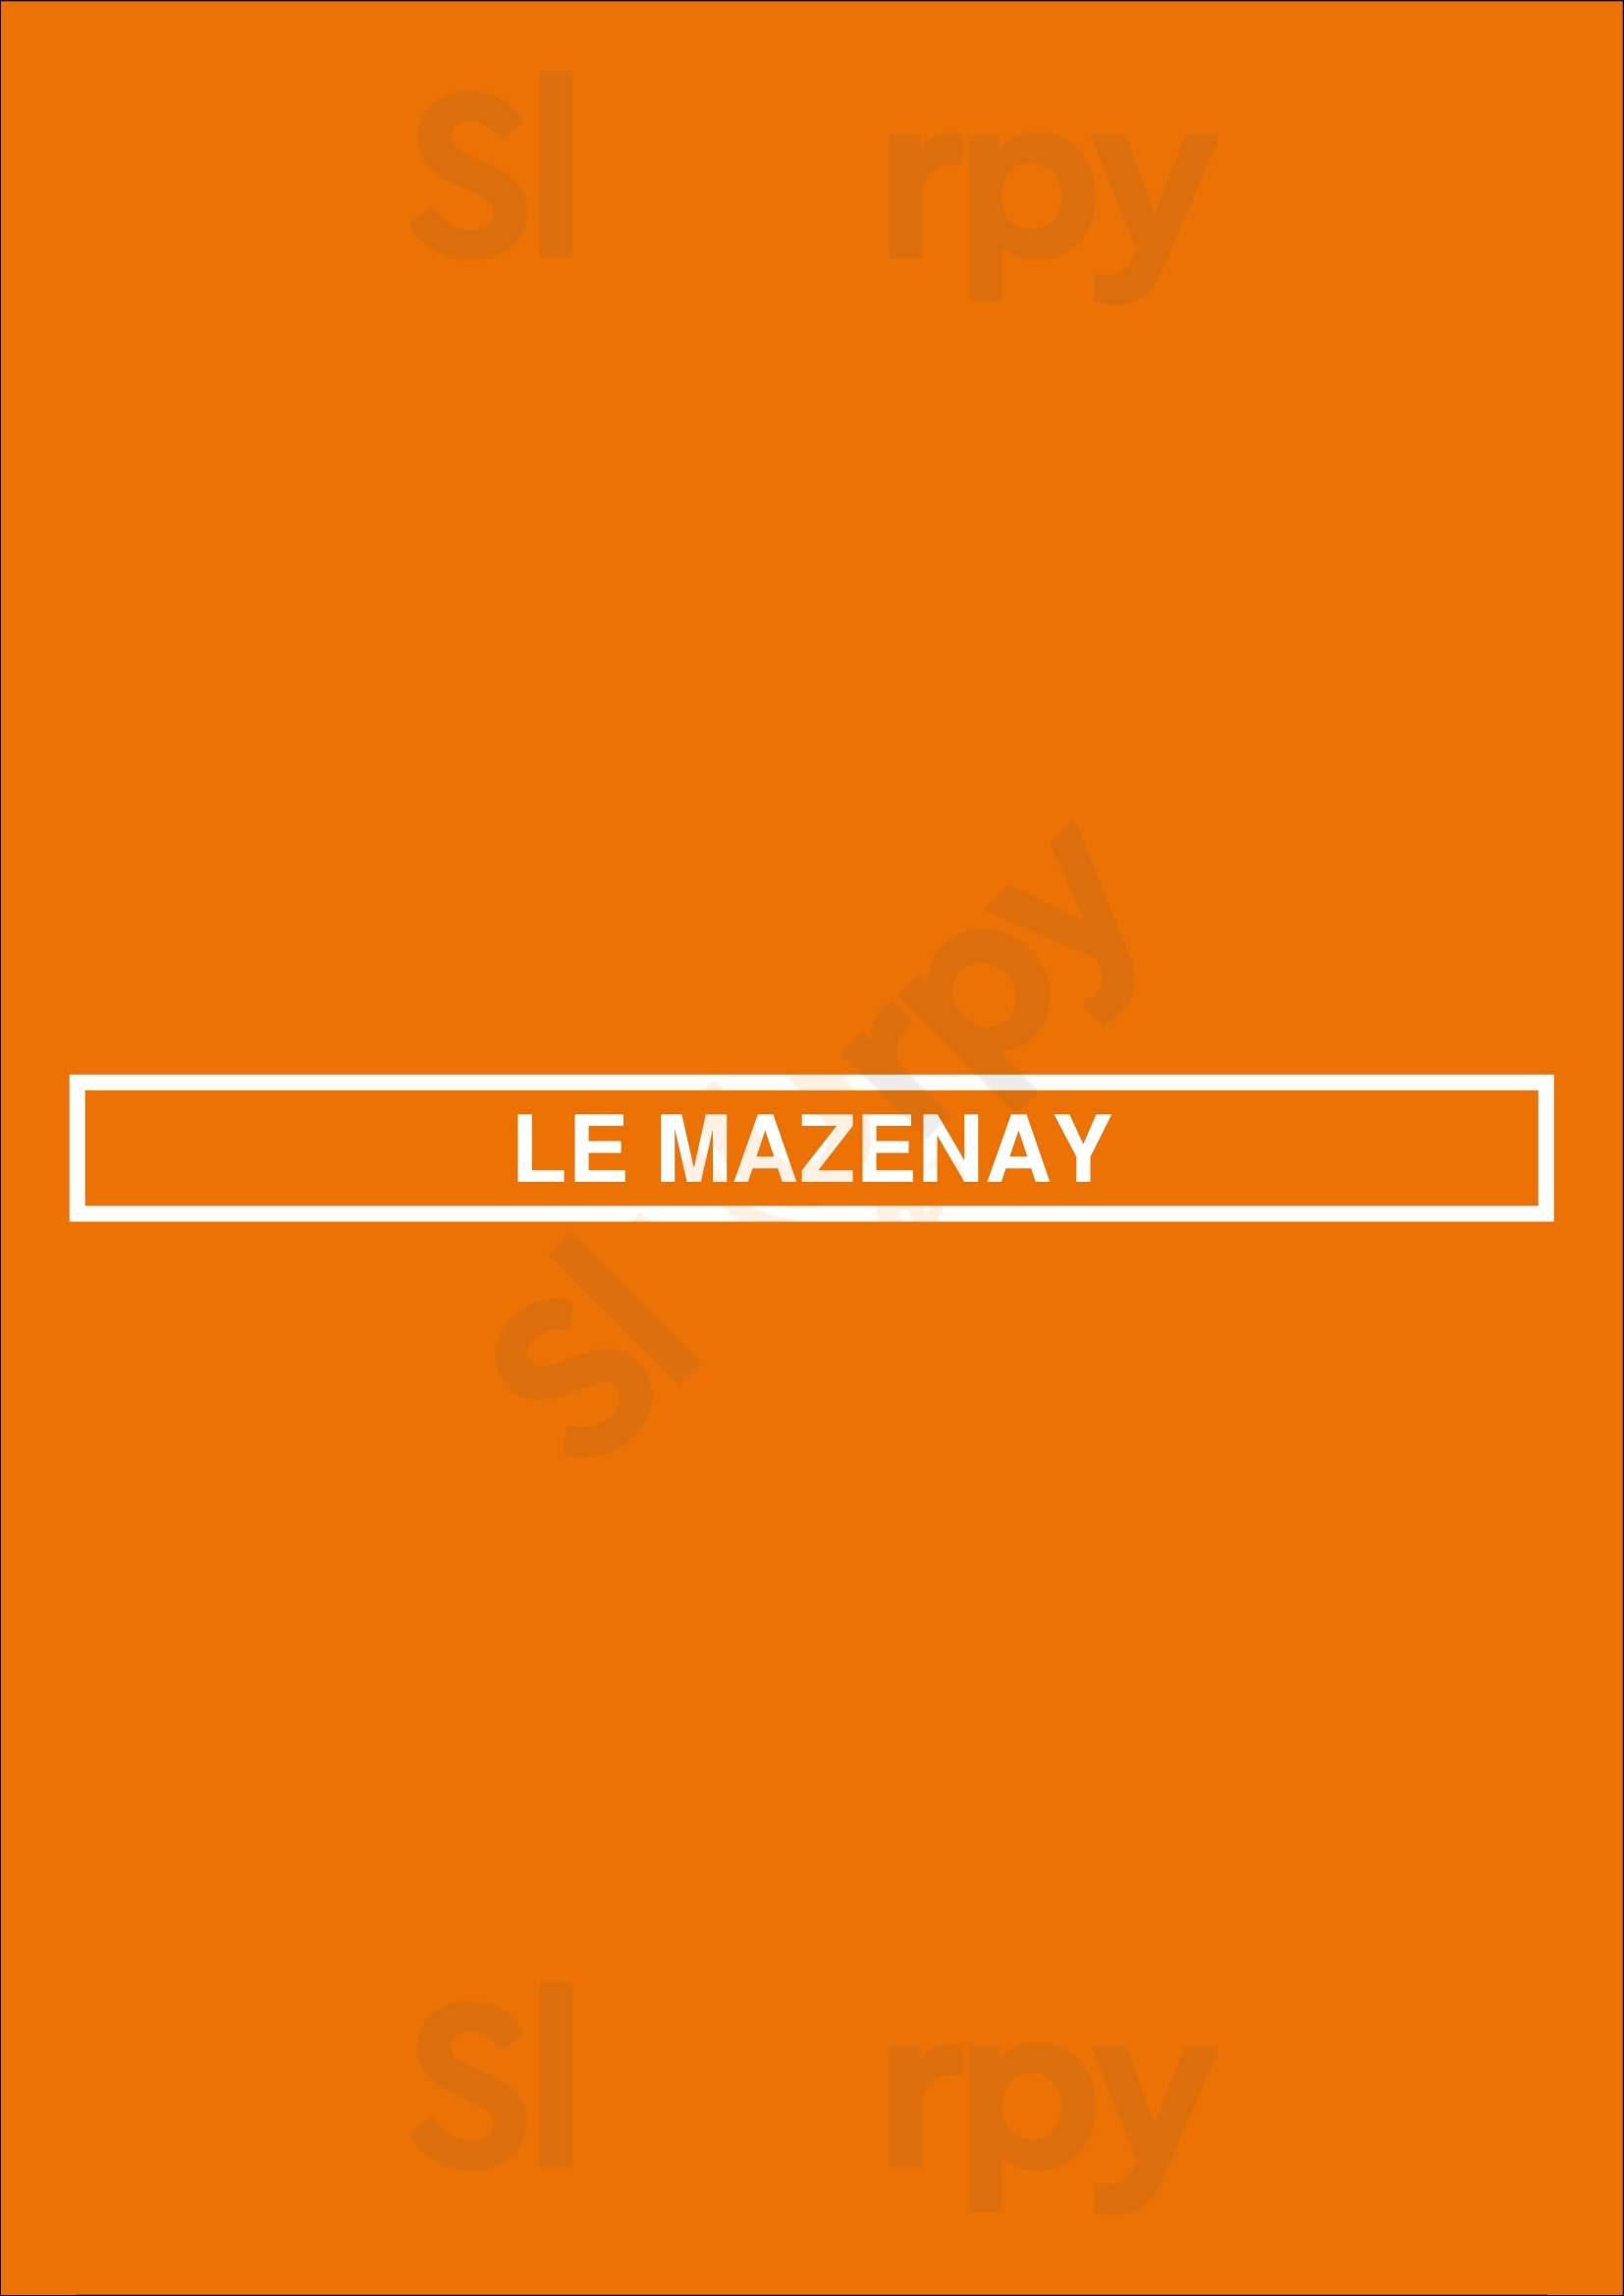 Le Mazenay Paris Menu - 1